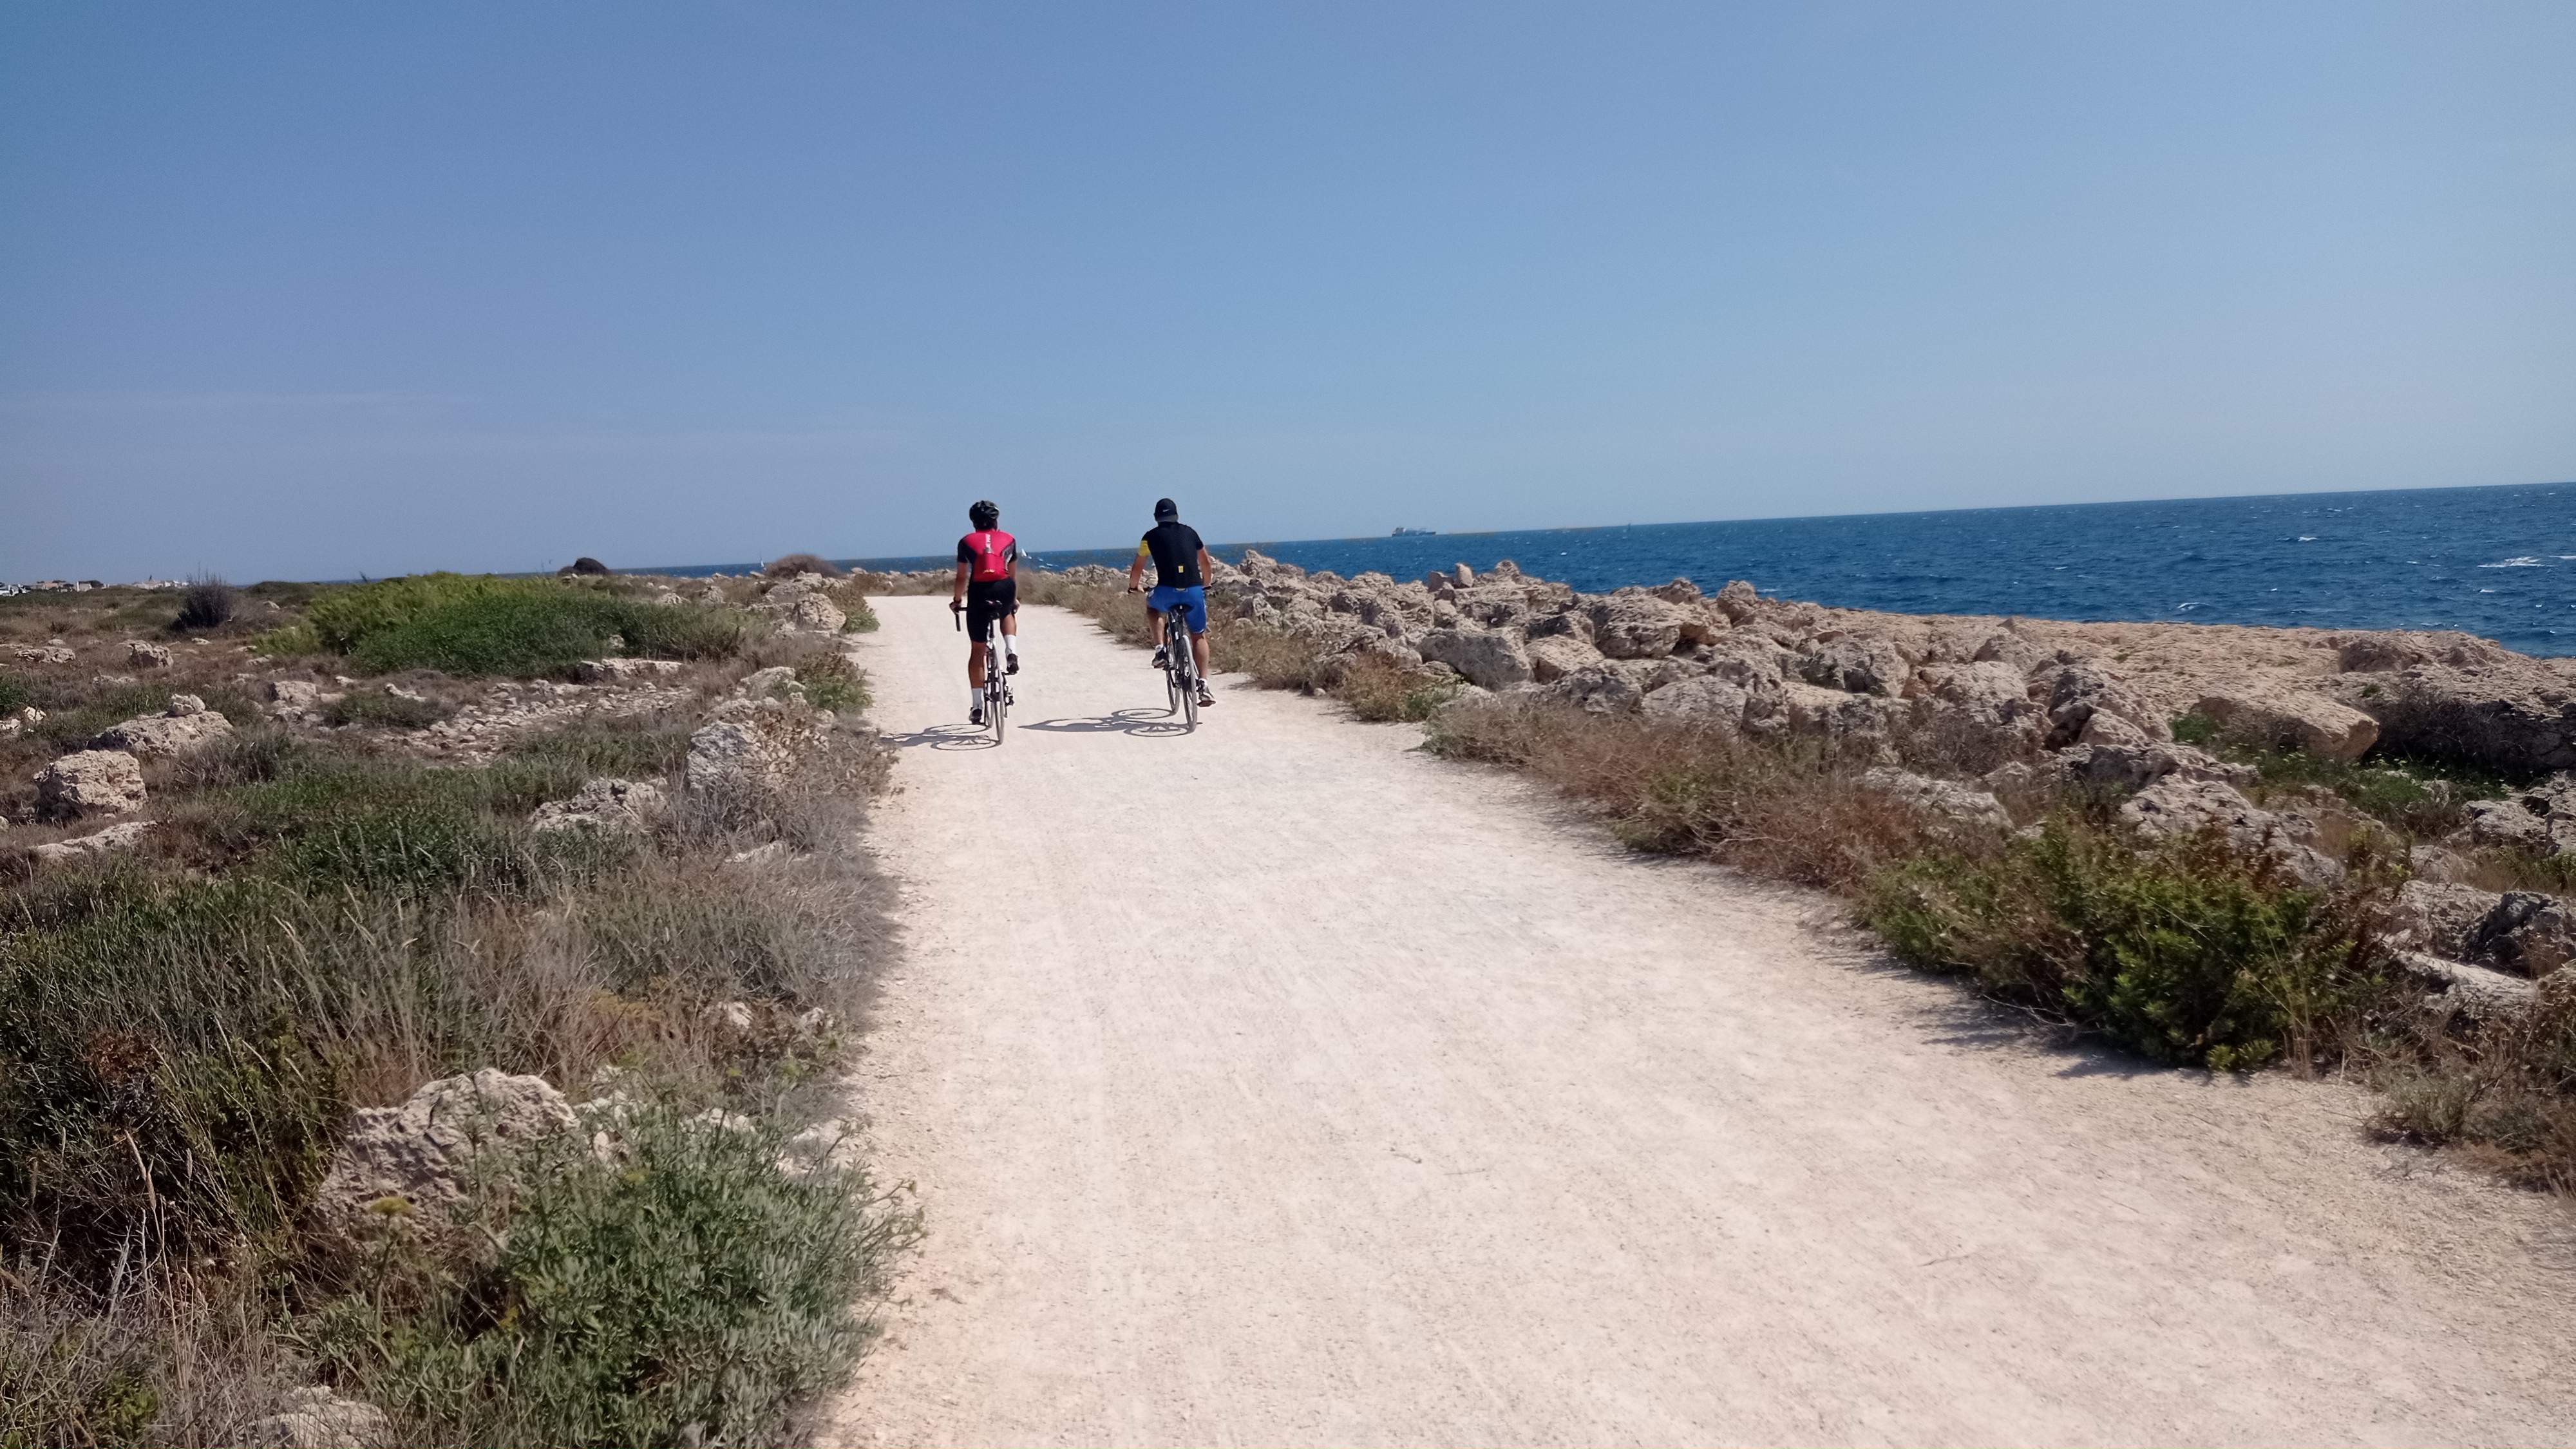 La voie verte de Carro et son littoral, Martigues - © Otmartigues / MyriamF